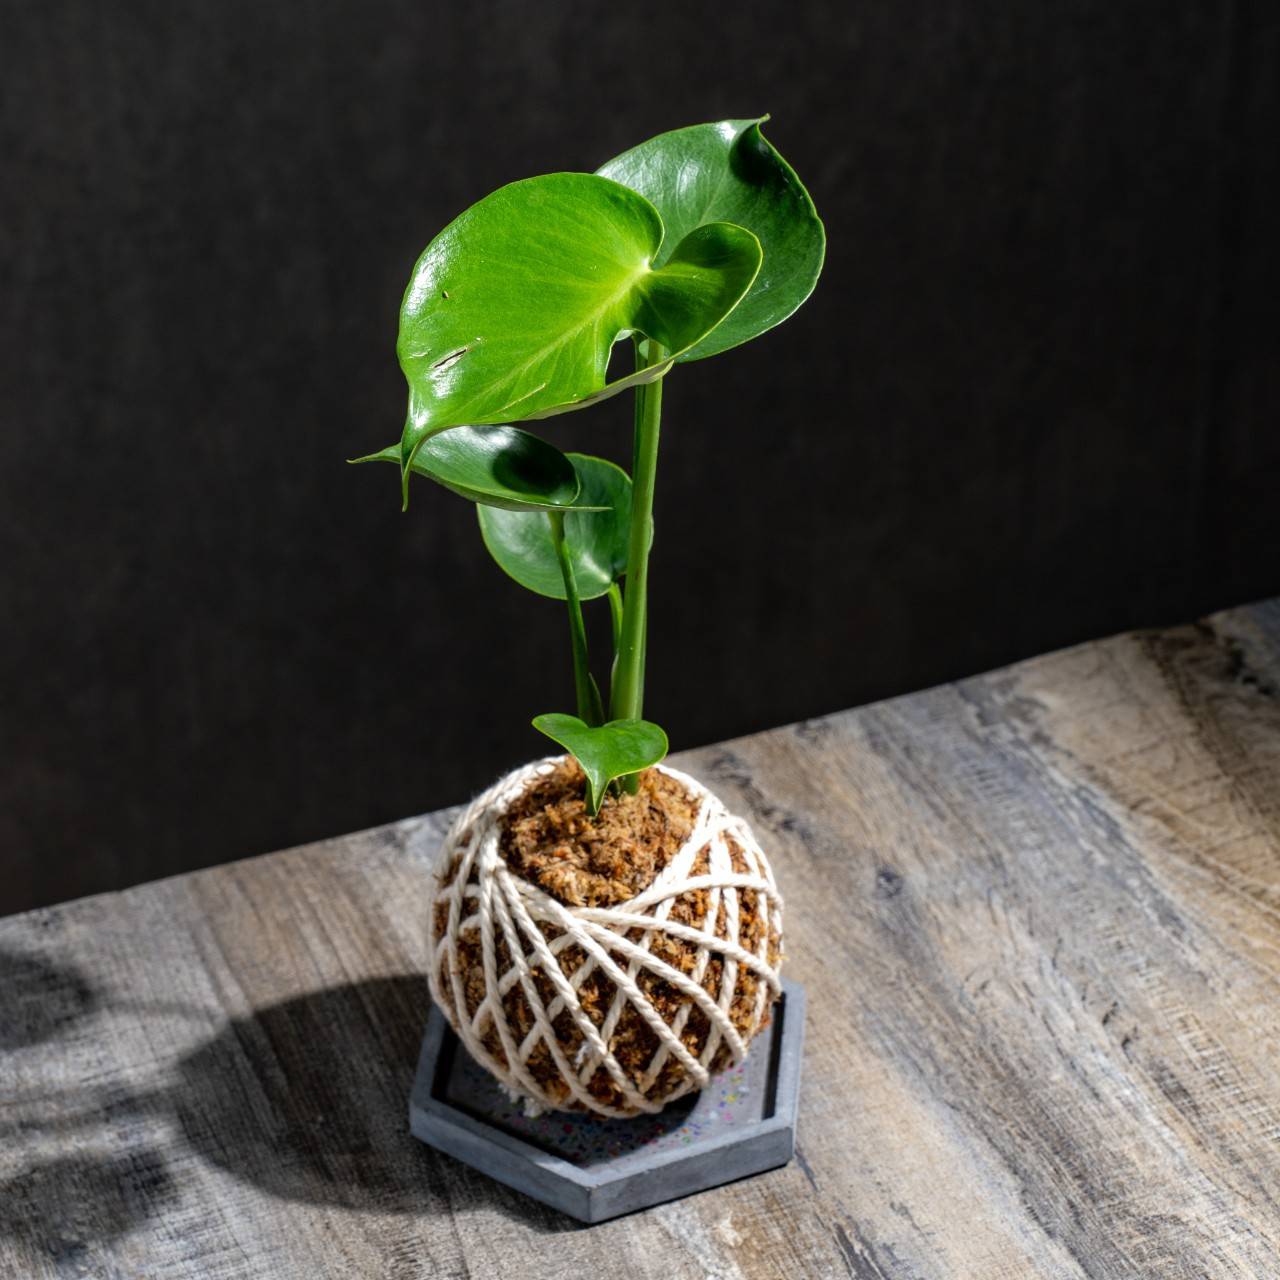 苔球植物 龜背芋水苔球 苔玉 適合室內植物 辦公室植物 交換禮物 情人節禮物